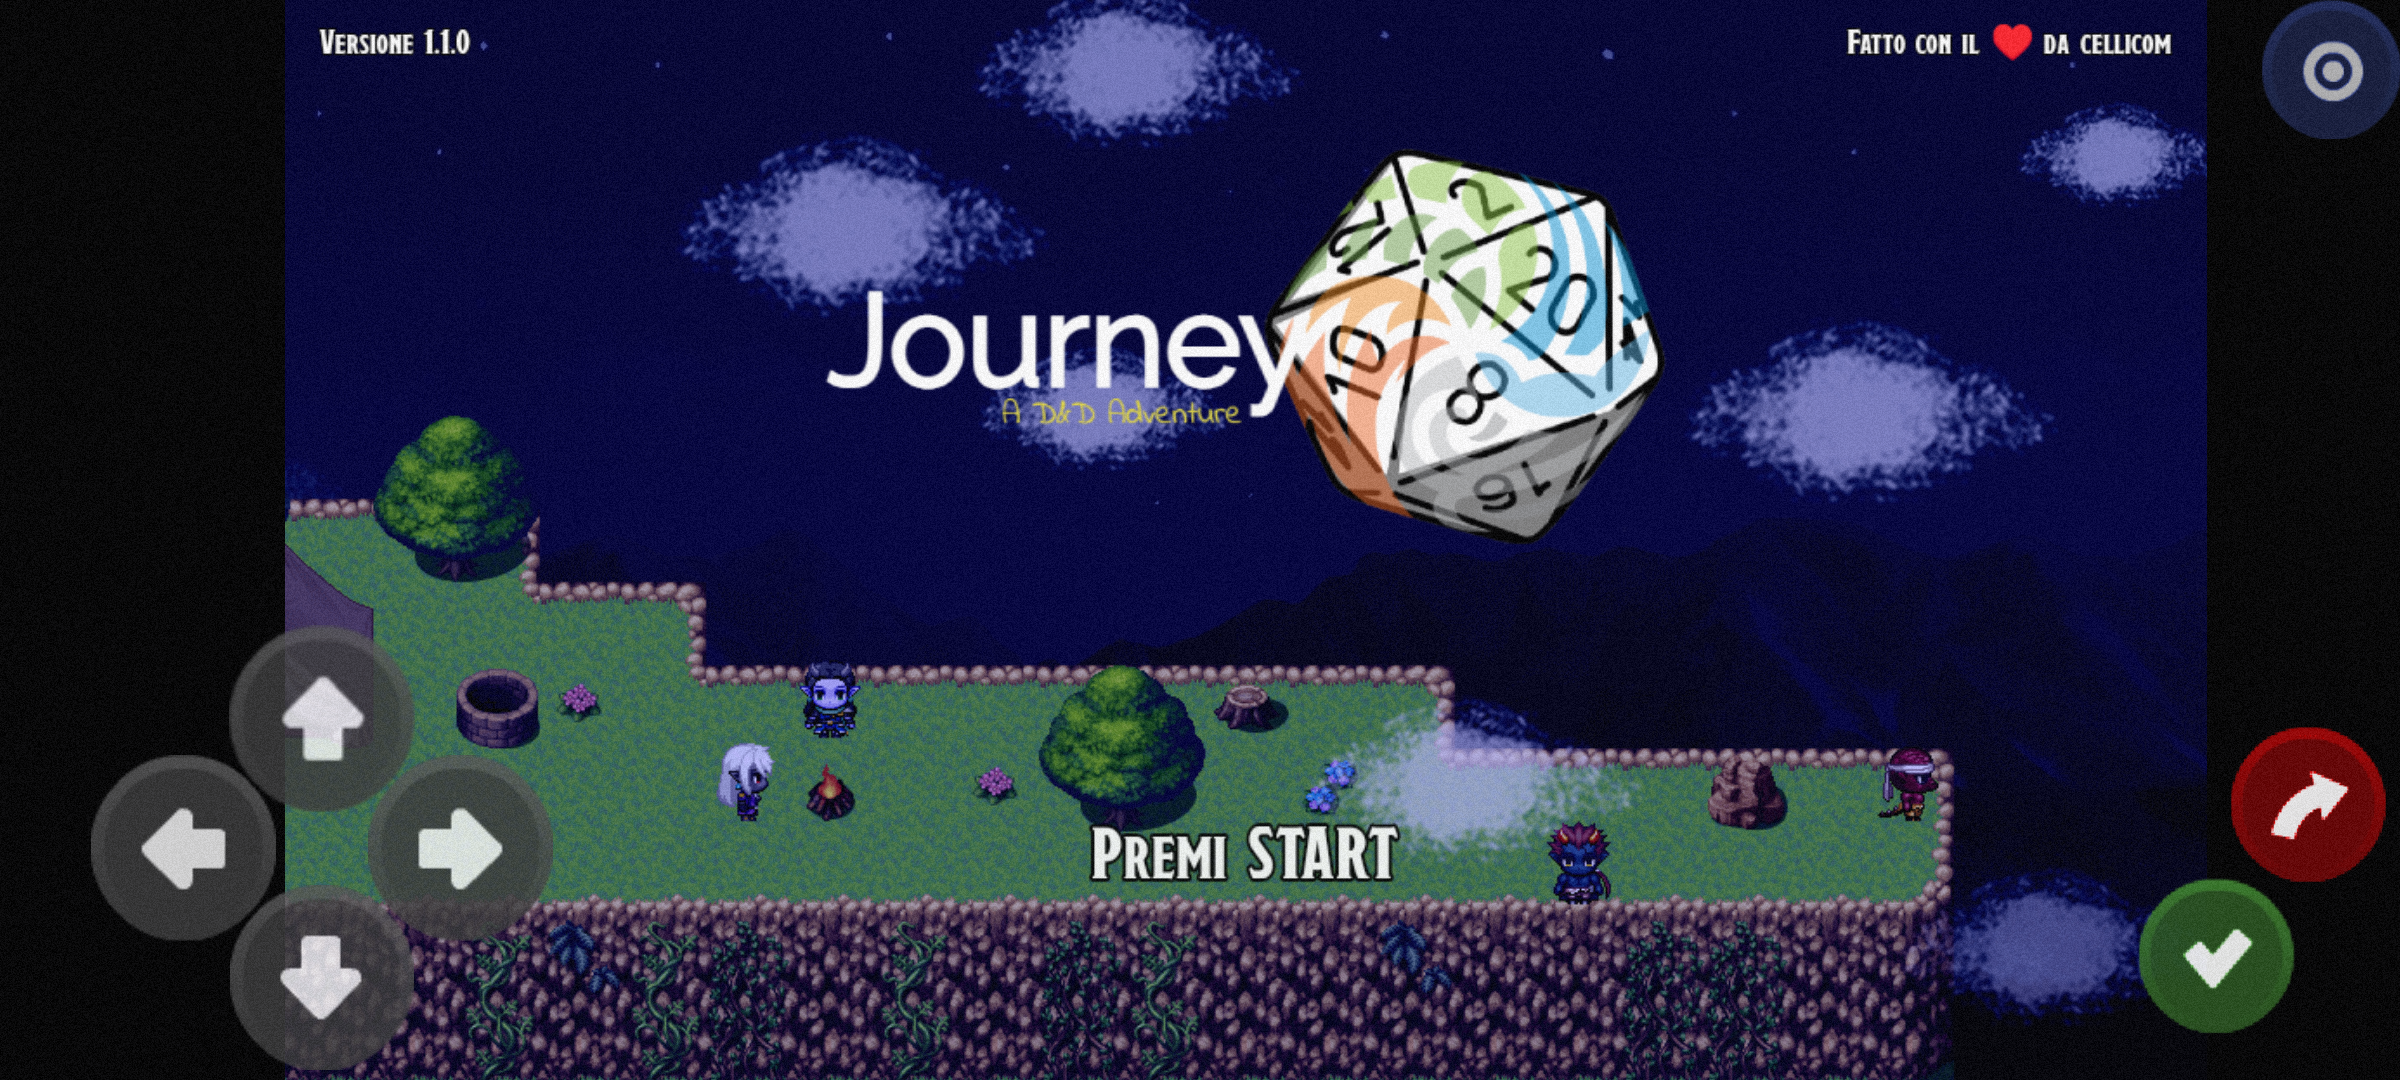 Journey - A D&D Adventure